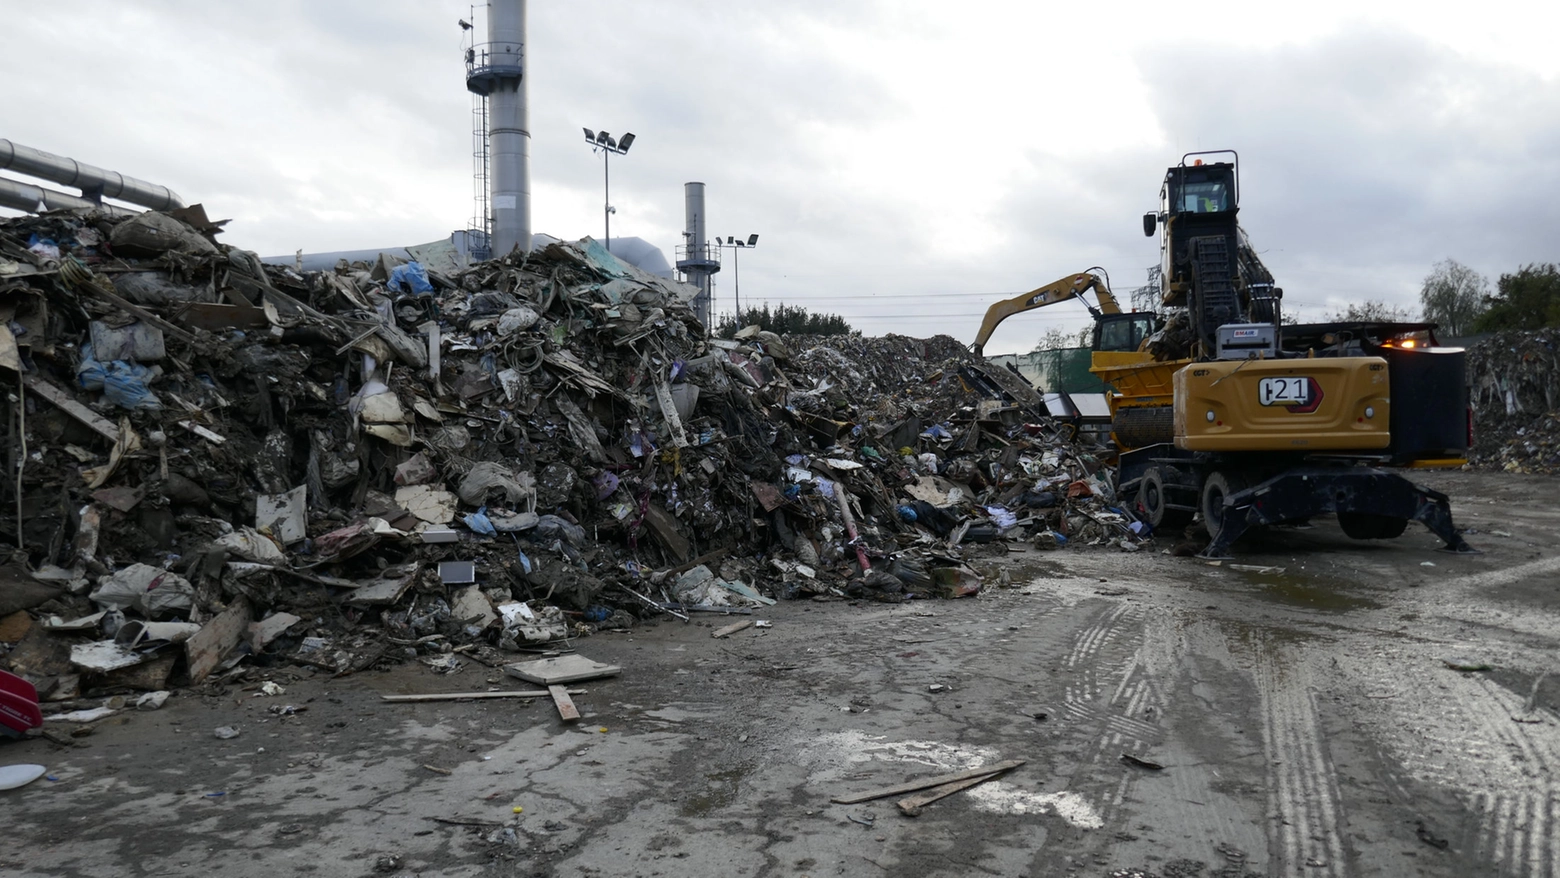 La discarica di rifiuti a Prato dopo l'alluvione (Foto Attalmi)